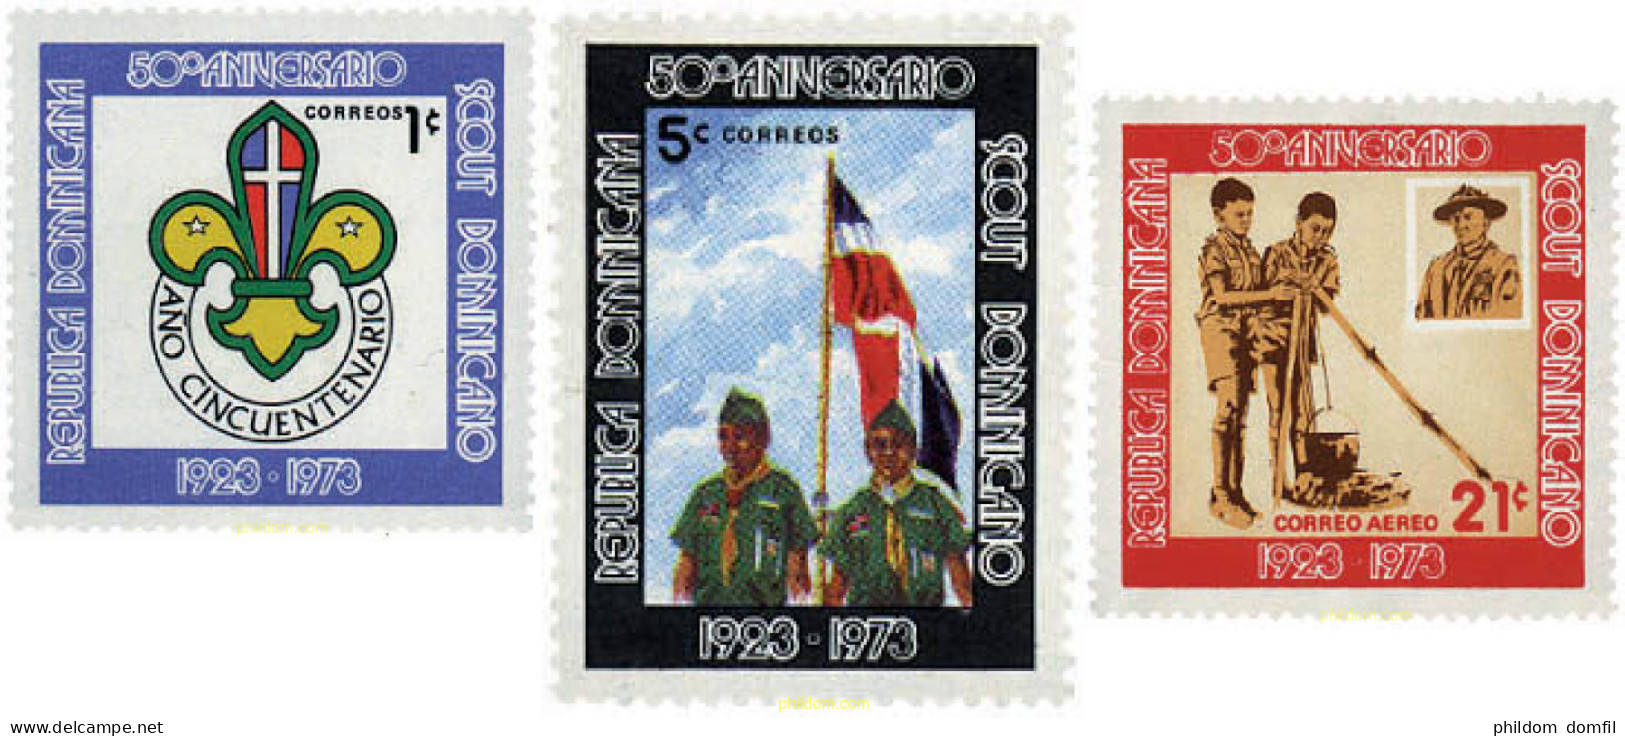 38792 MNH DOMINICANA 1973 50 ANIVERSARIO DEL ESCULTISMO EN LA REPUBLICA DOMINICANA - Dominican Republic